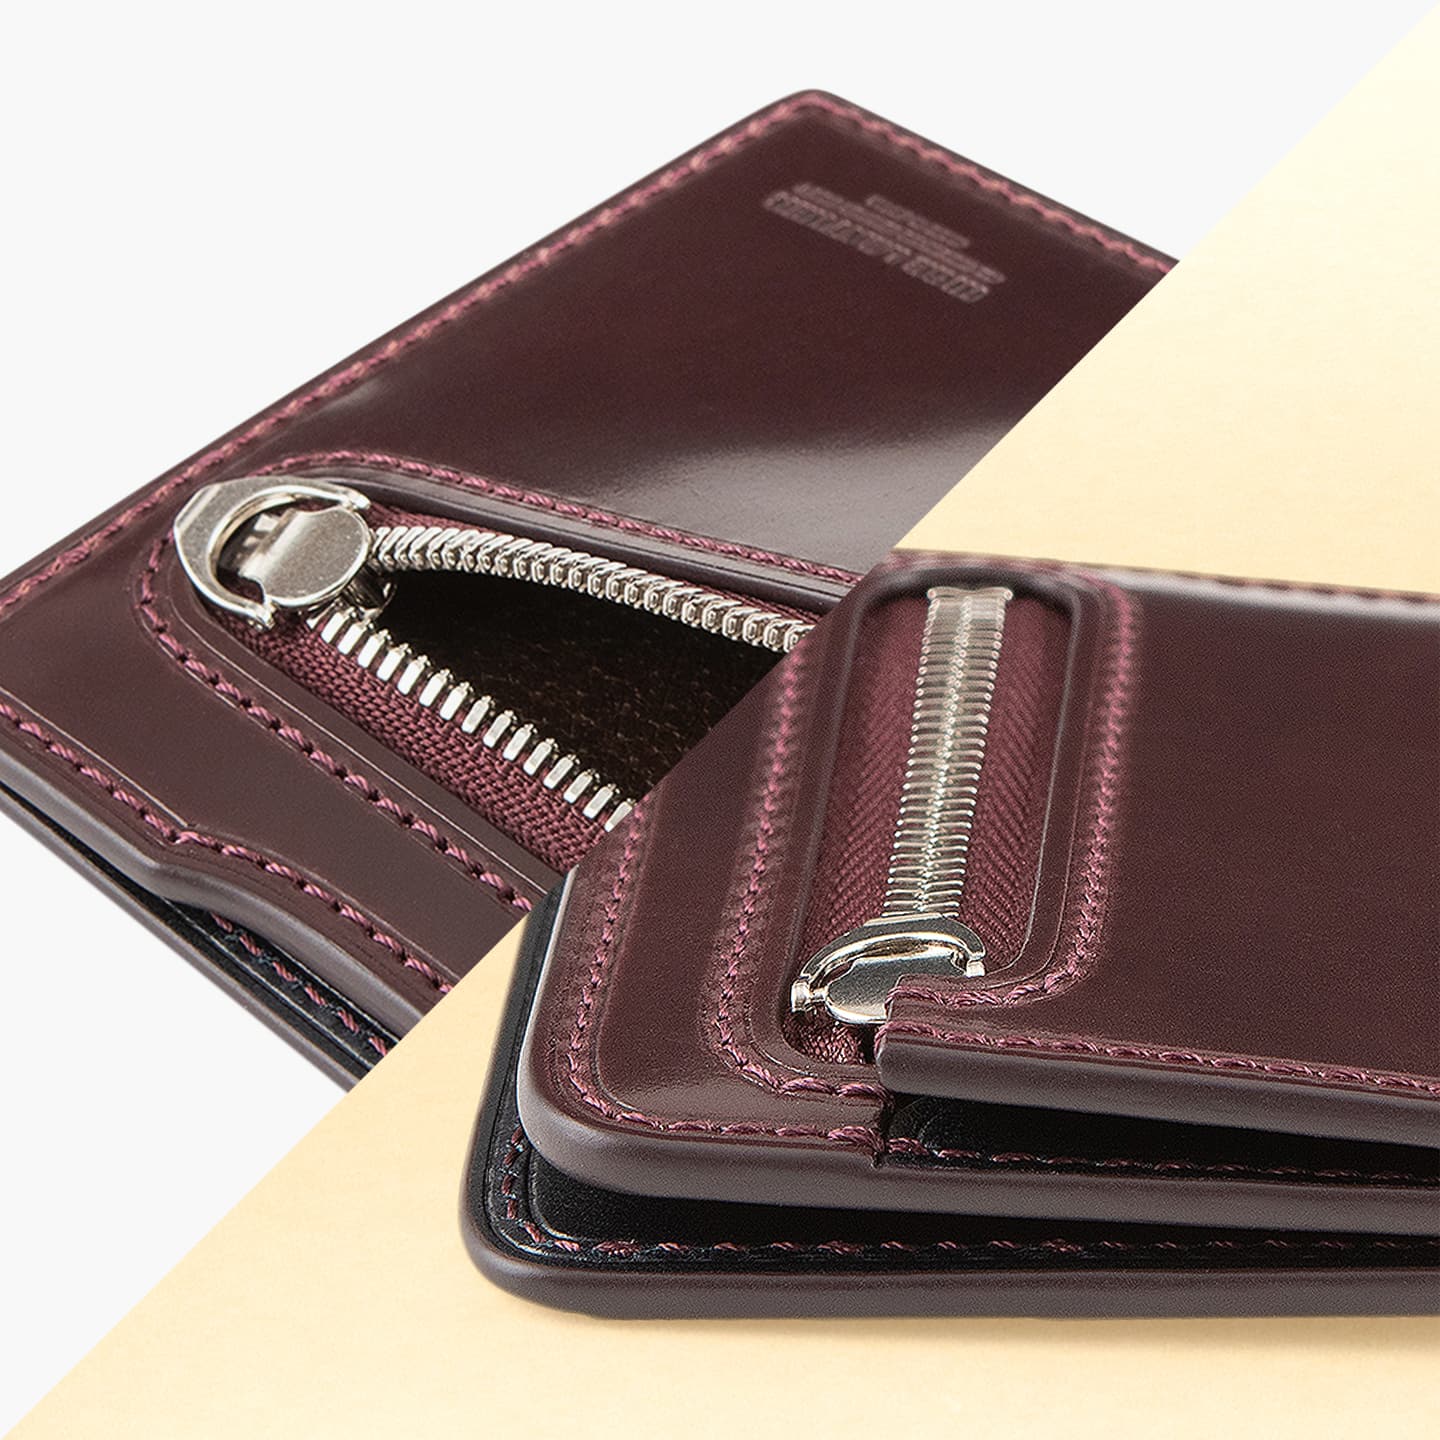 シェルコードバン × ブッテーロ スクエアコンパクトウォレット 大人の財布・ ミニ・コンパクト財布 など拘りの日本製ブランドなら Mens  Leather Store